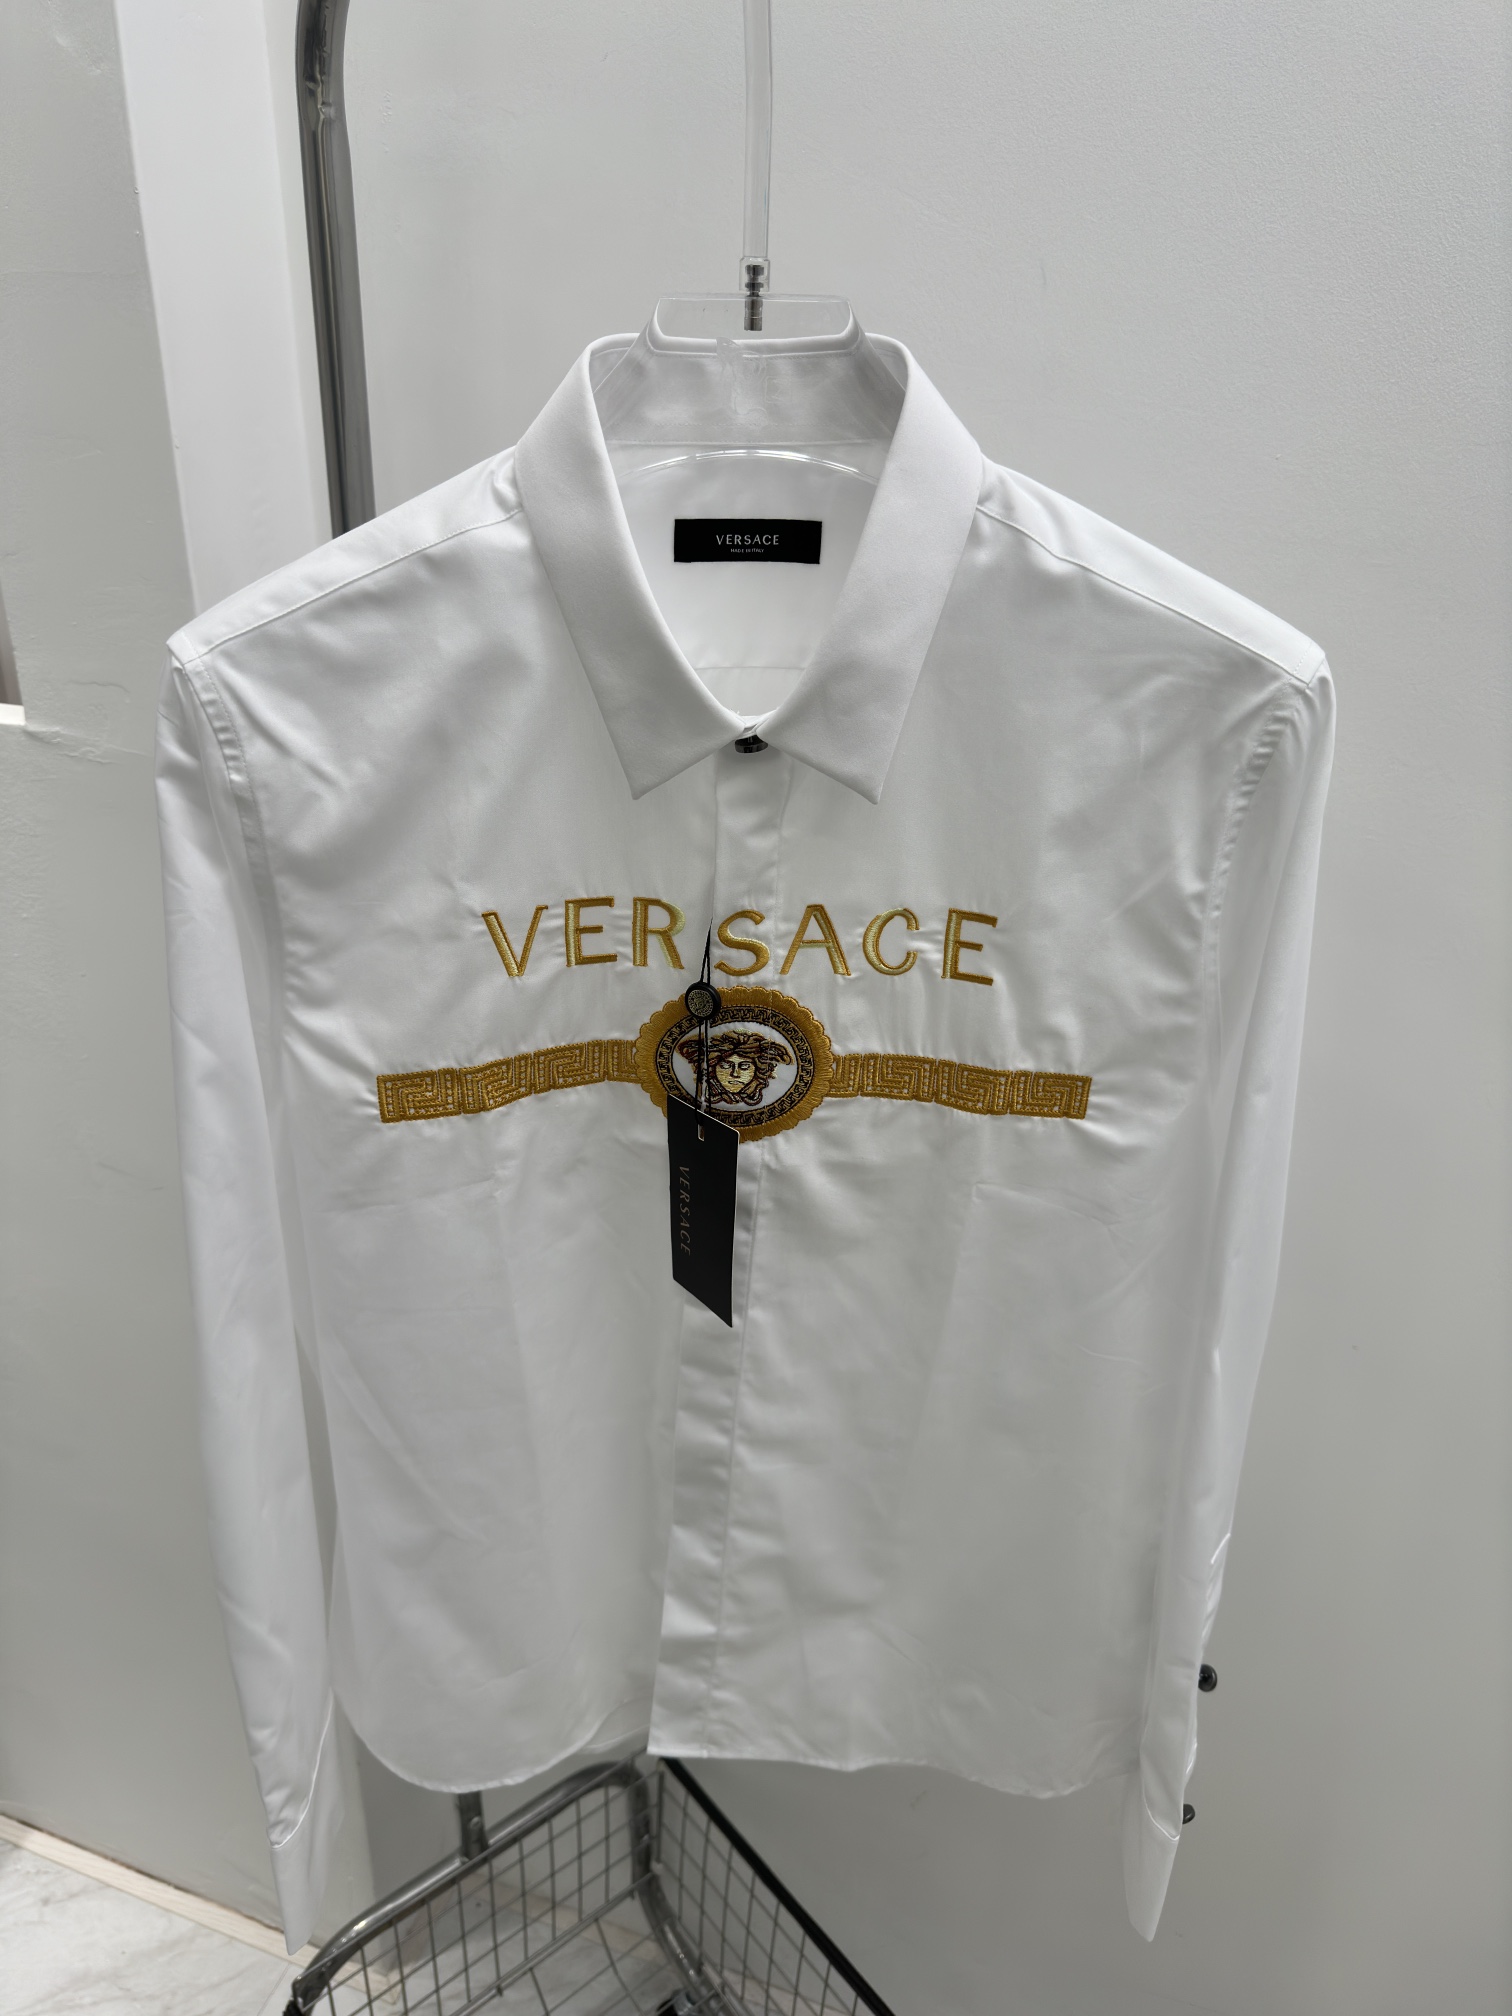 VerB新款男士衬衫十分高调的款式风格设计但是当别人窥探你品味之时却能让他为之一怔让我为大家介绍下此款衬